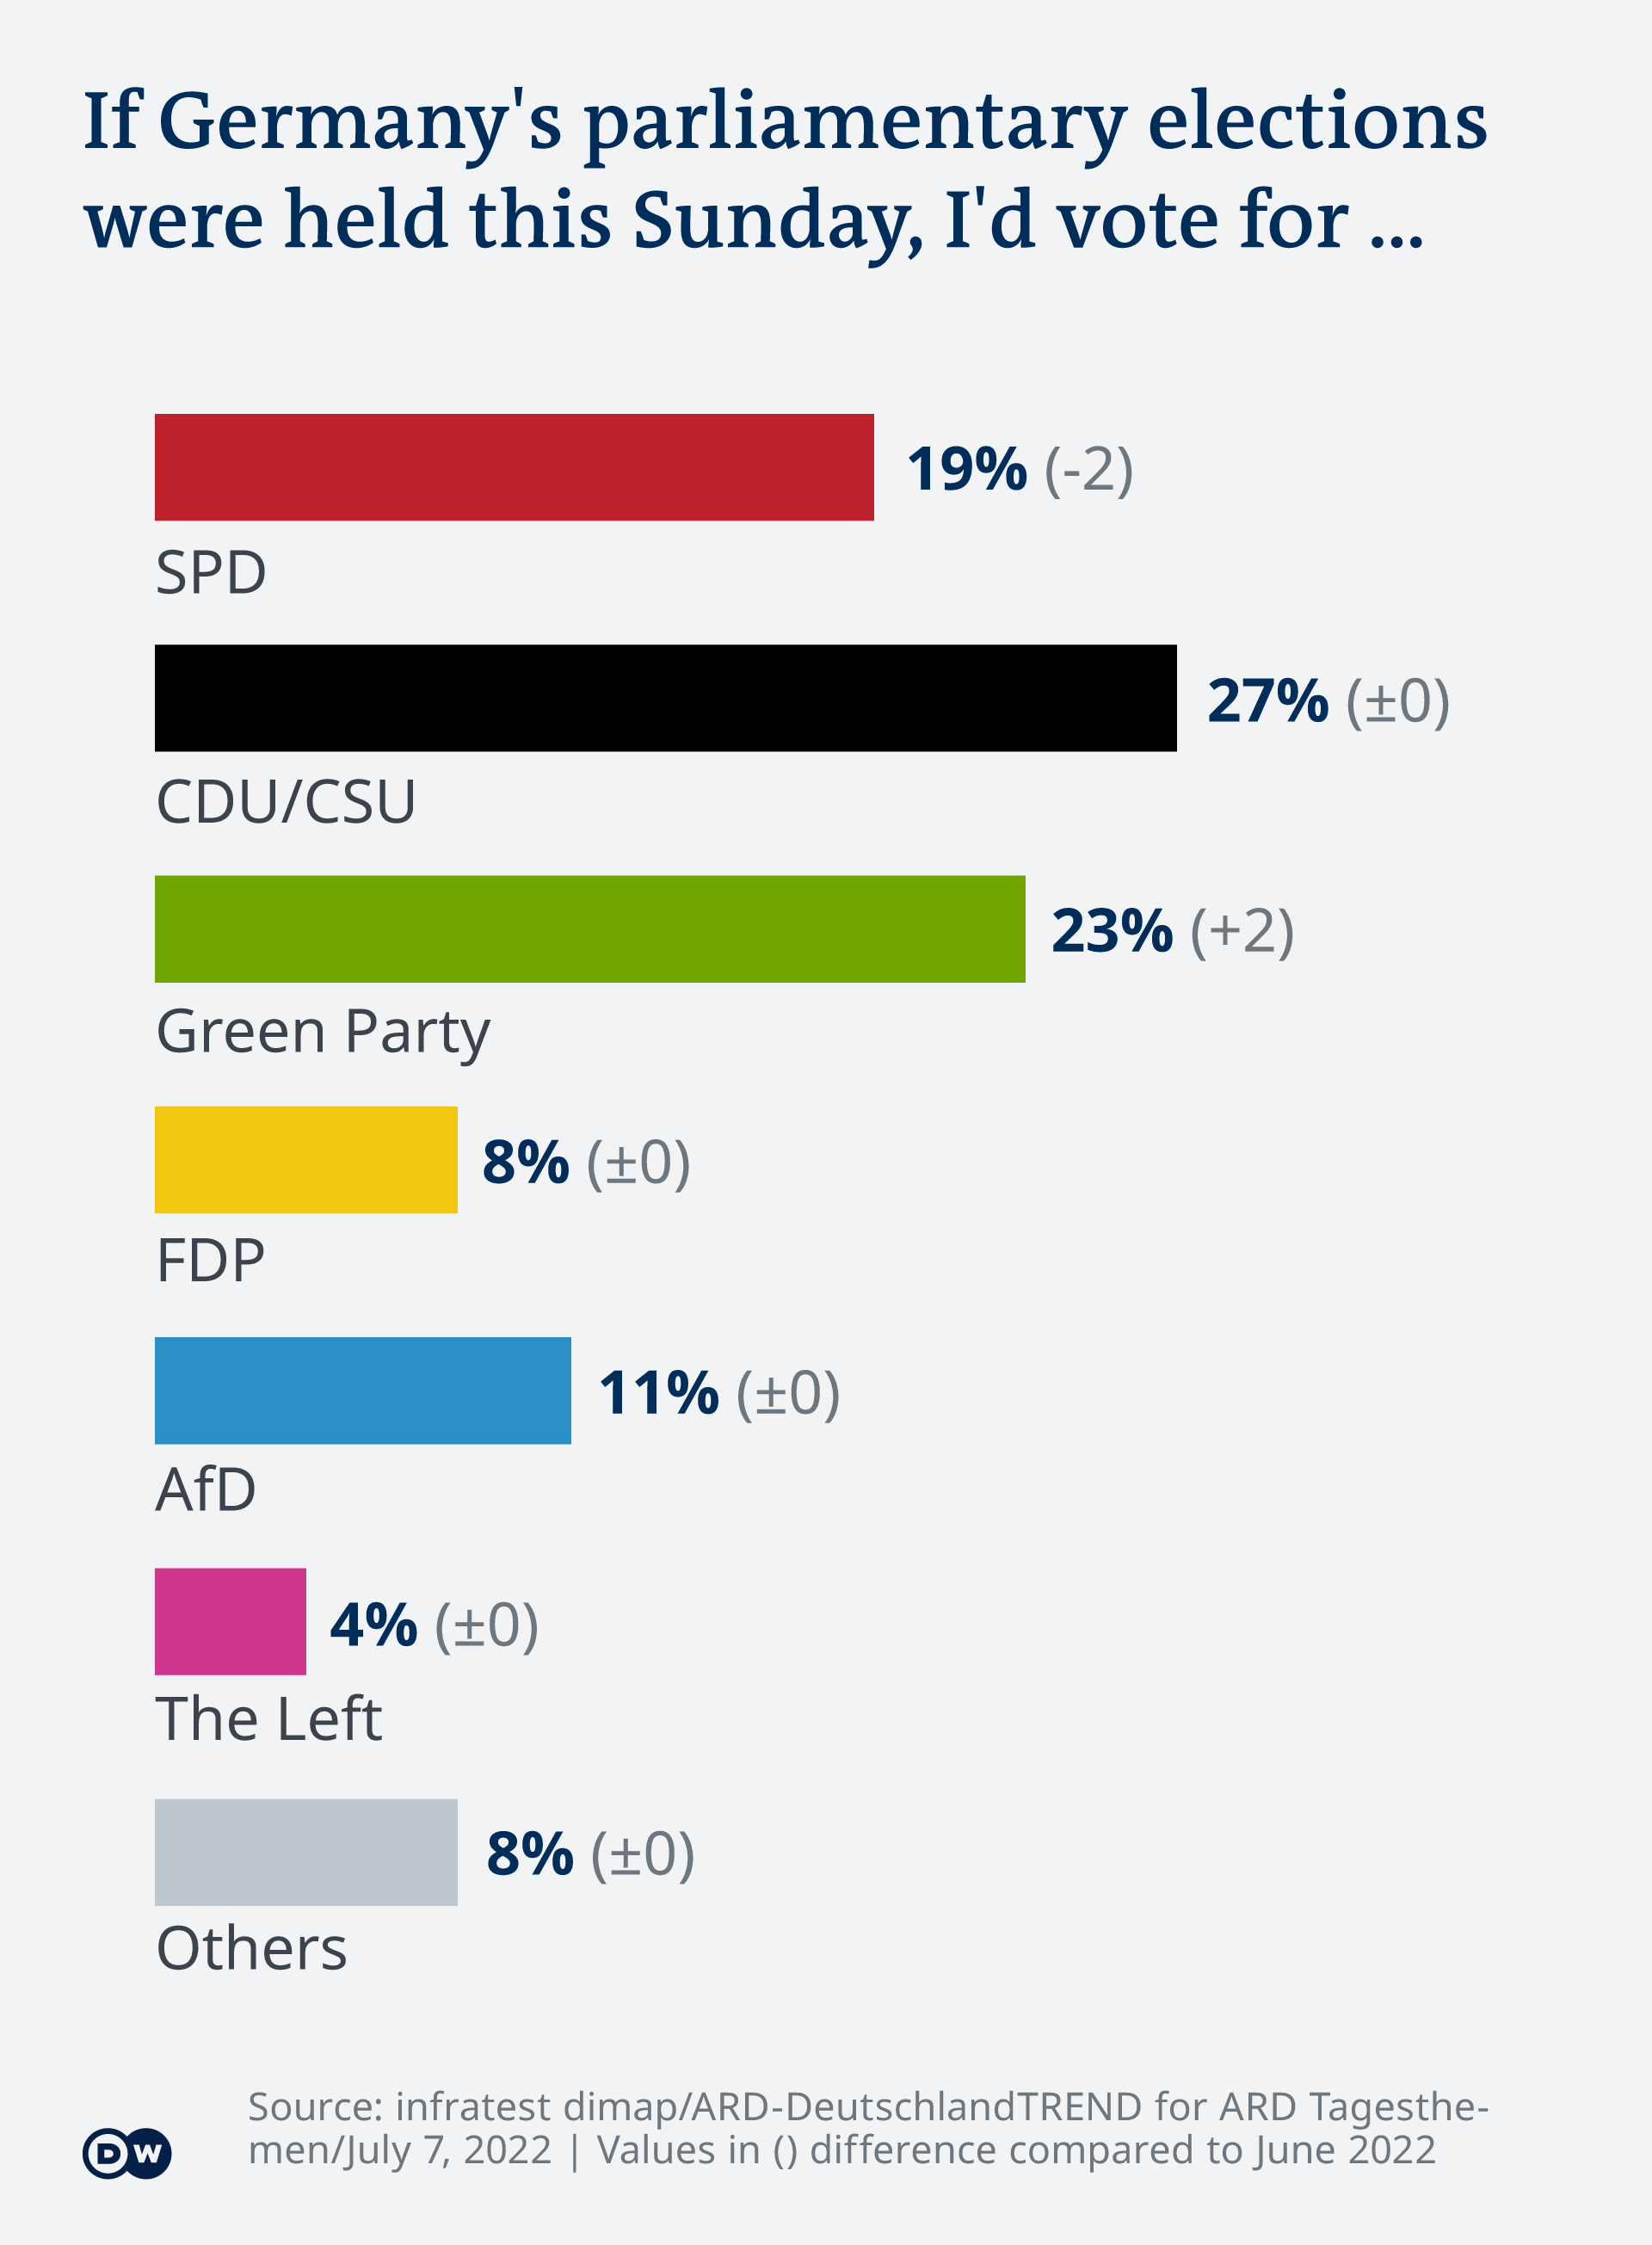 infografía que muestra las preferencias de partido de los encuestados